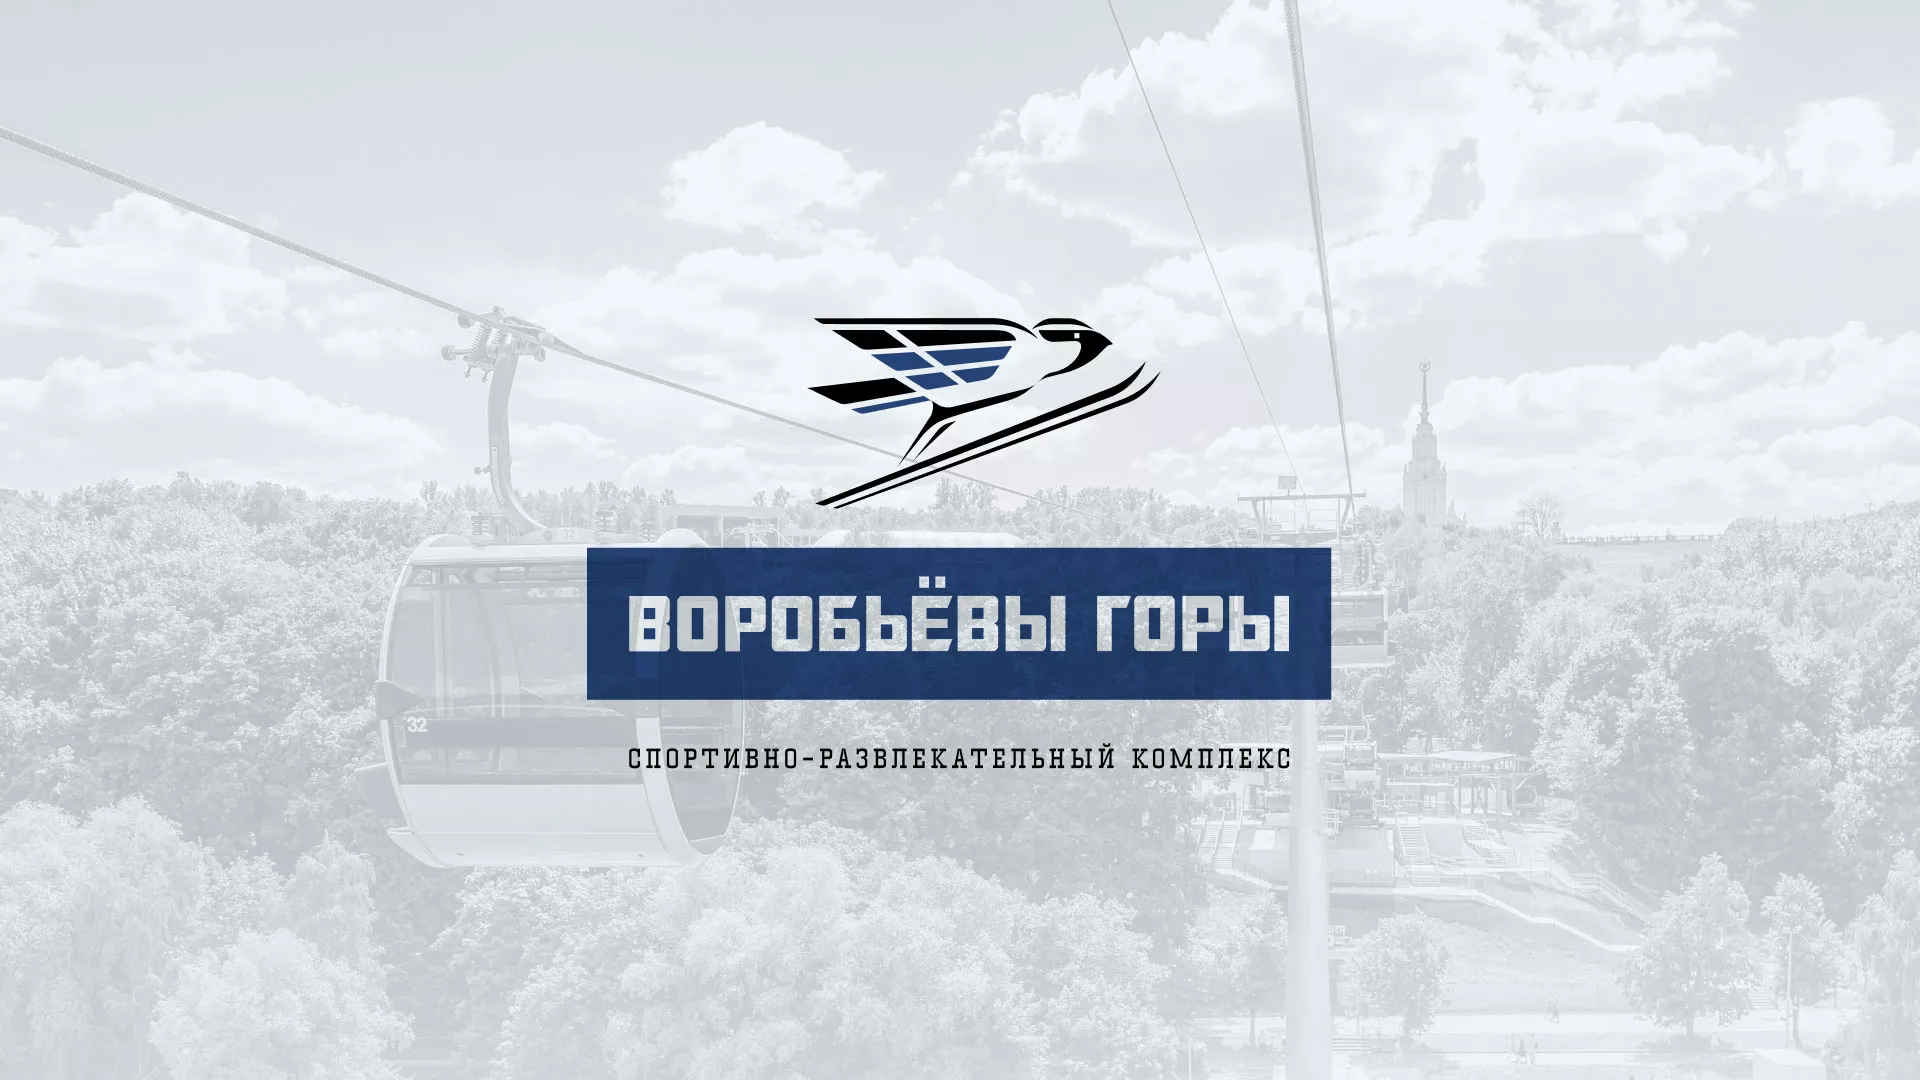 Разработка сайта в Домодедово для спортивно-развлекательного комплекса «Воробьёвы горы»